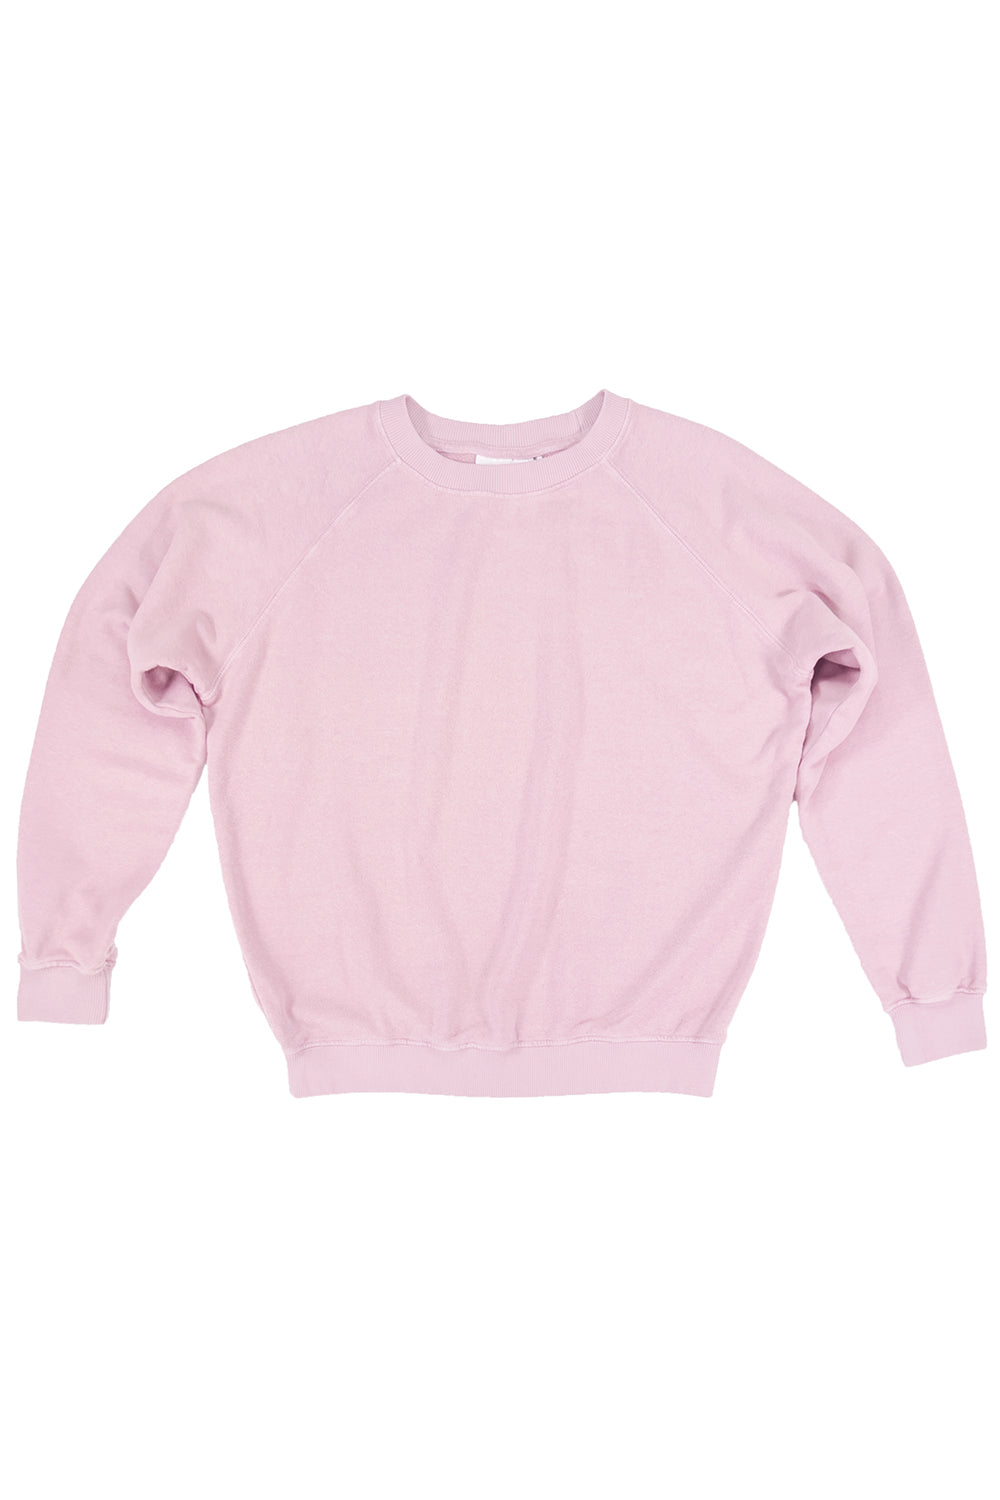 Bonfire Raglan Sweatshirt | Jungmaven Hemp Clothing & Accessories / Color: Rose Quartz